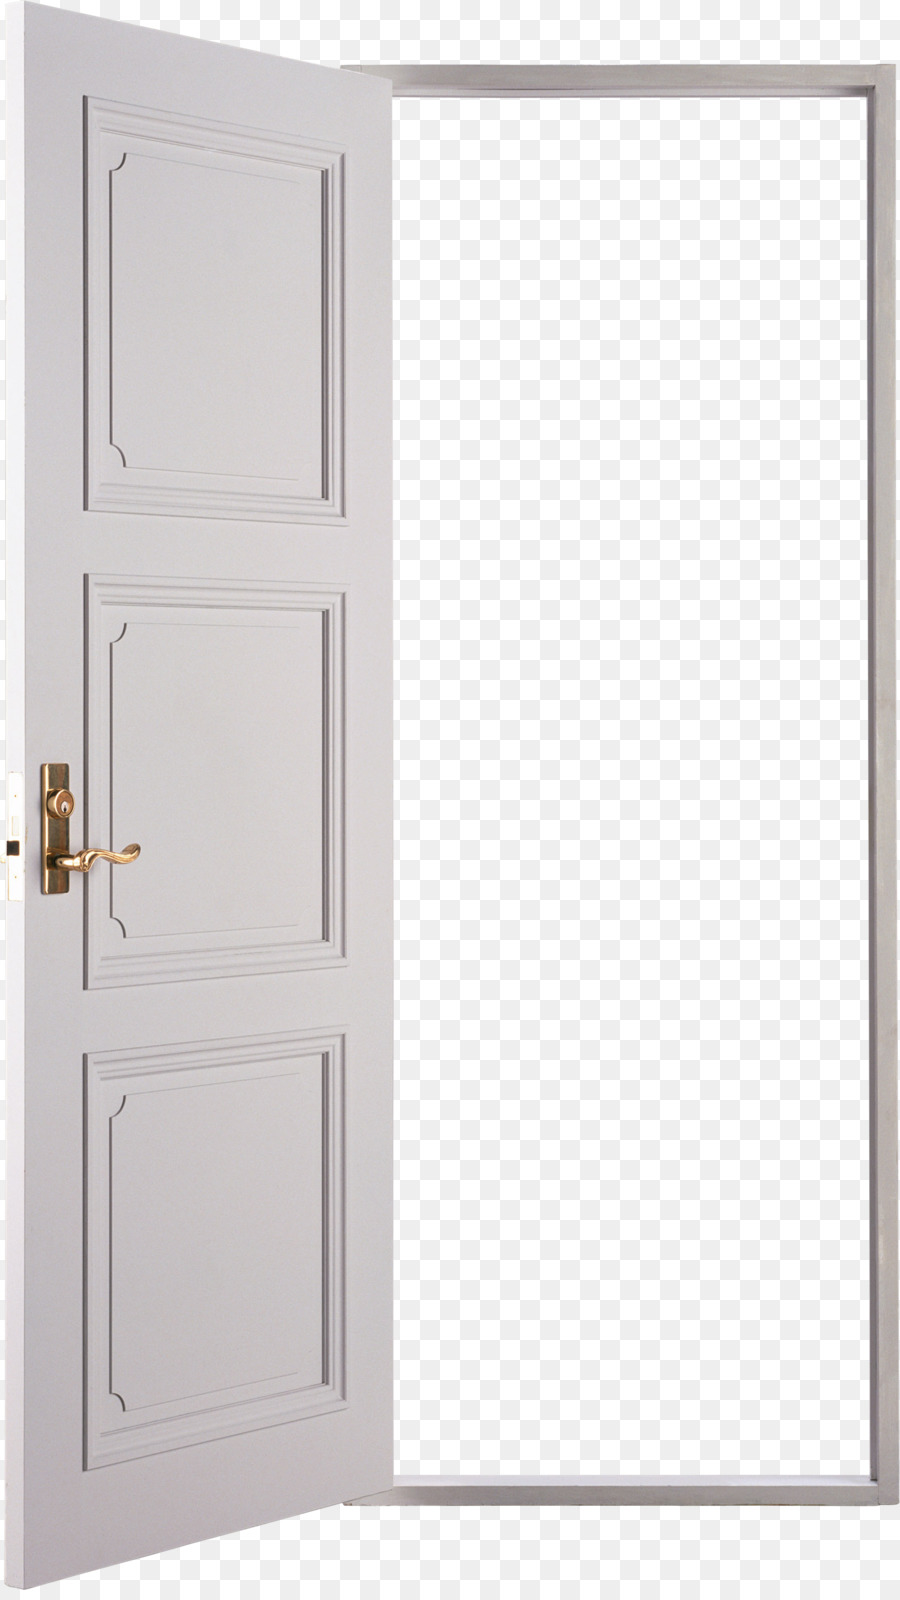 Cửa Trắng - cánh cửa màu trắng